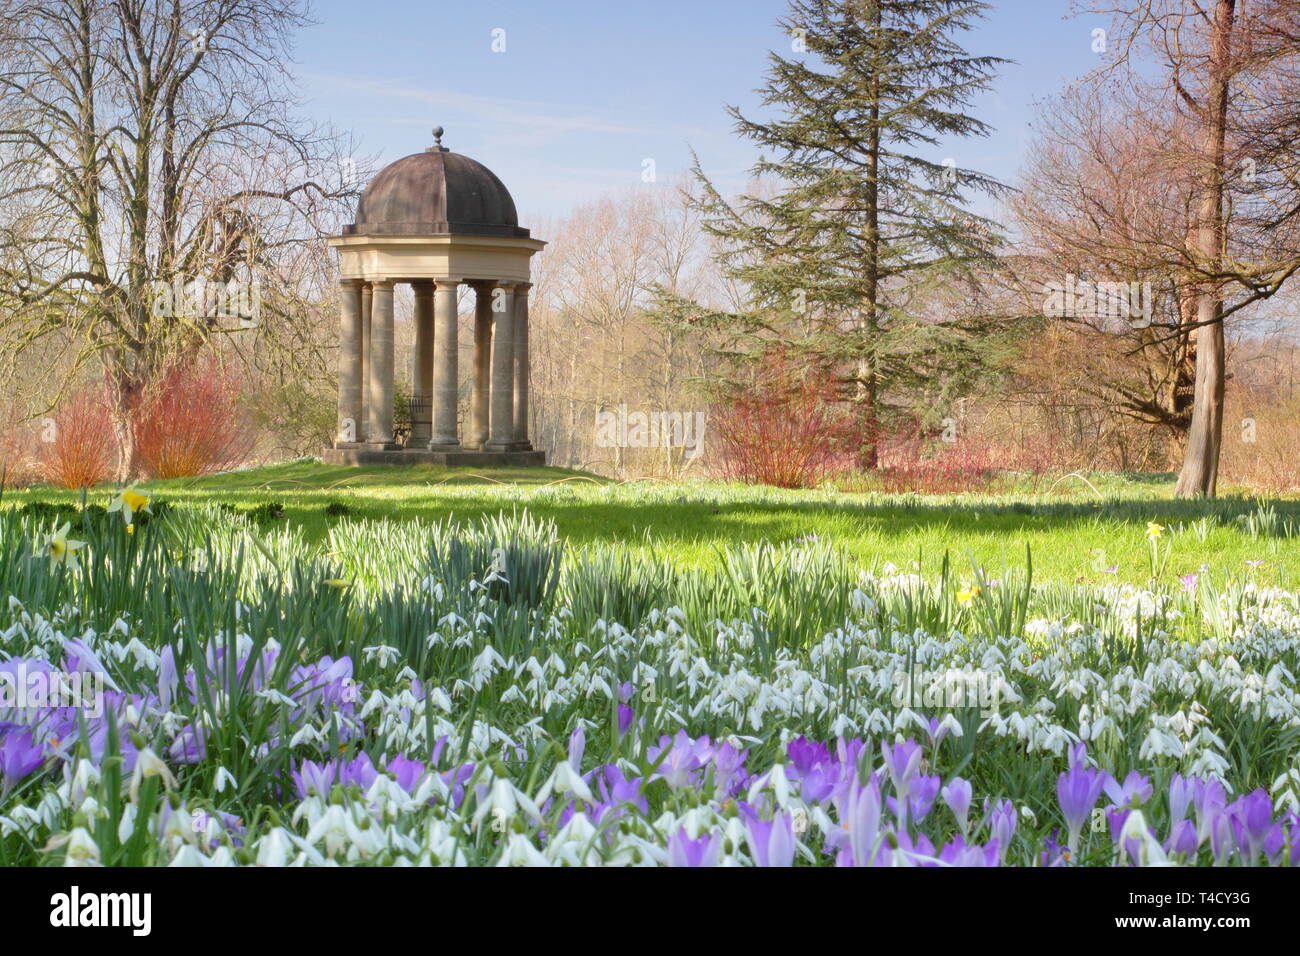 Der Tempel der Winde an doddington Halle und Gärten, Lincolnshire aus einem Rasen eingebürgerten Krokusse und Schneeglöckchen, - Ende Februar, UK gesehen Stockfoto